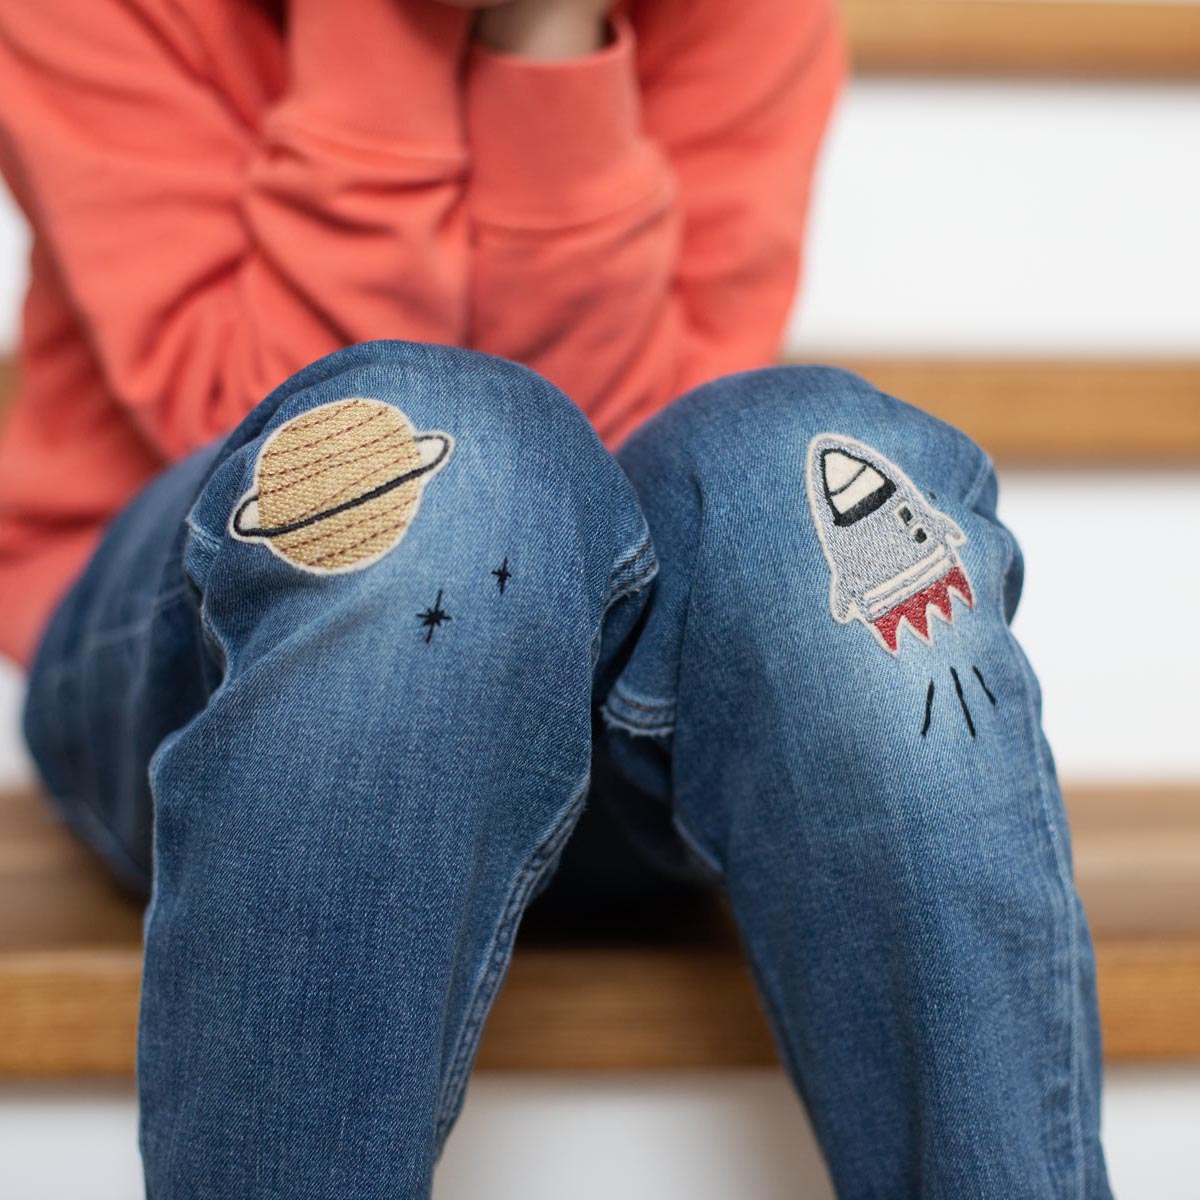 Kind sitzt auf der Treppe und hat eine geflickte Jeans Hose an. Auf den Knien sind zwei Bügelflicken von halfbird, ein Planet in gold und eine Rakete in grau